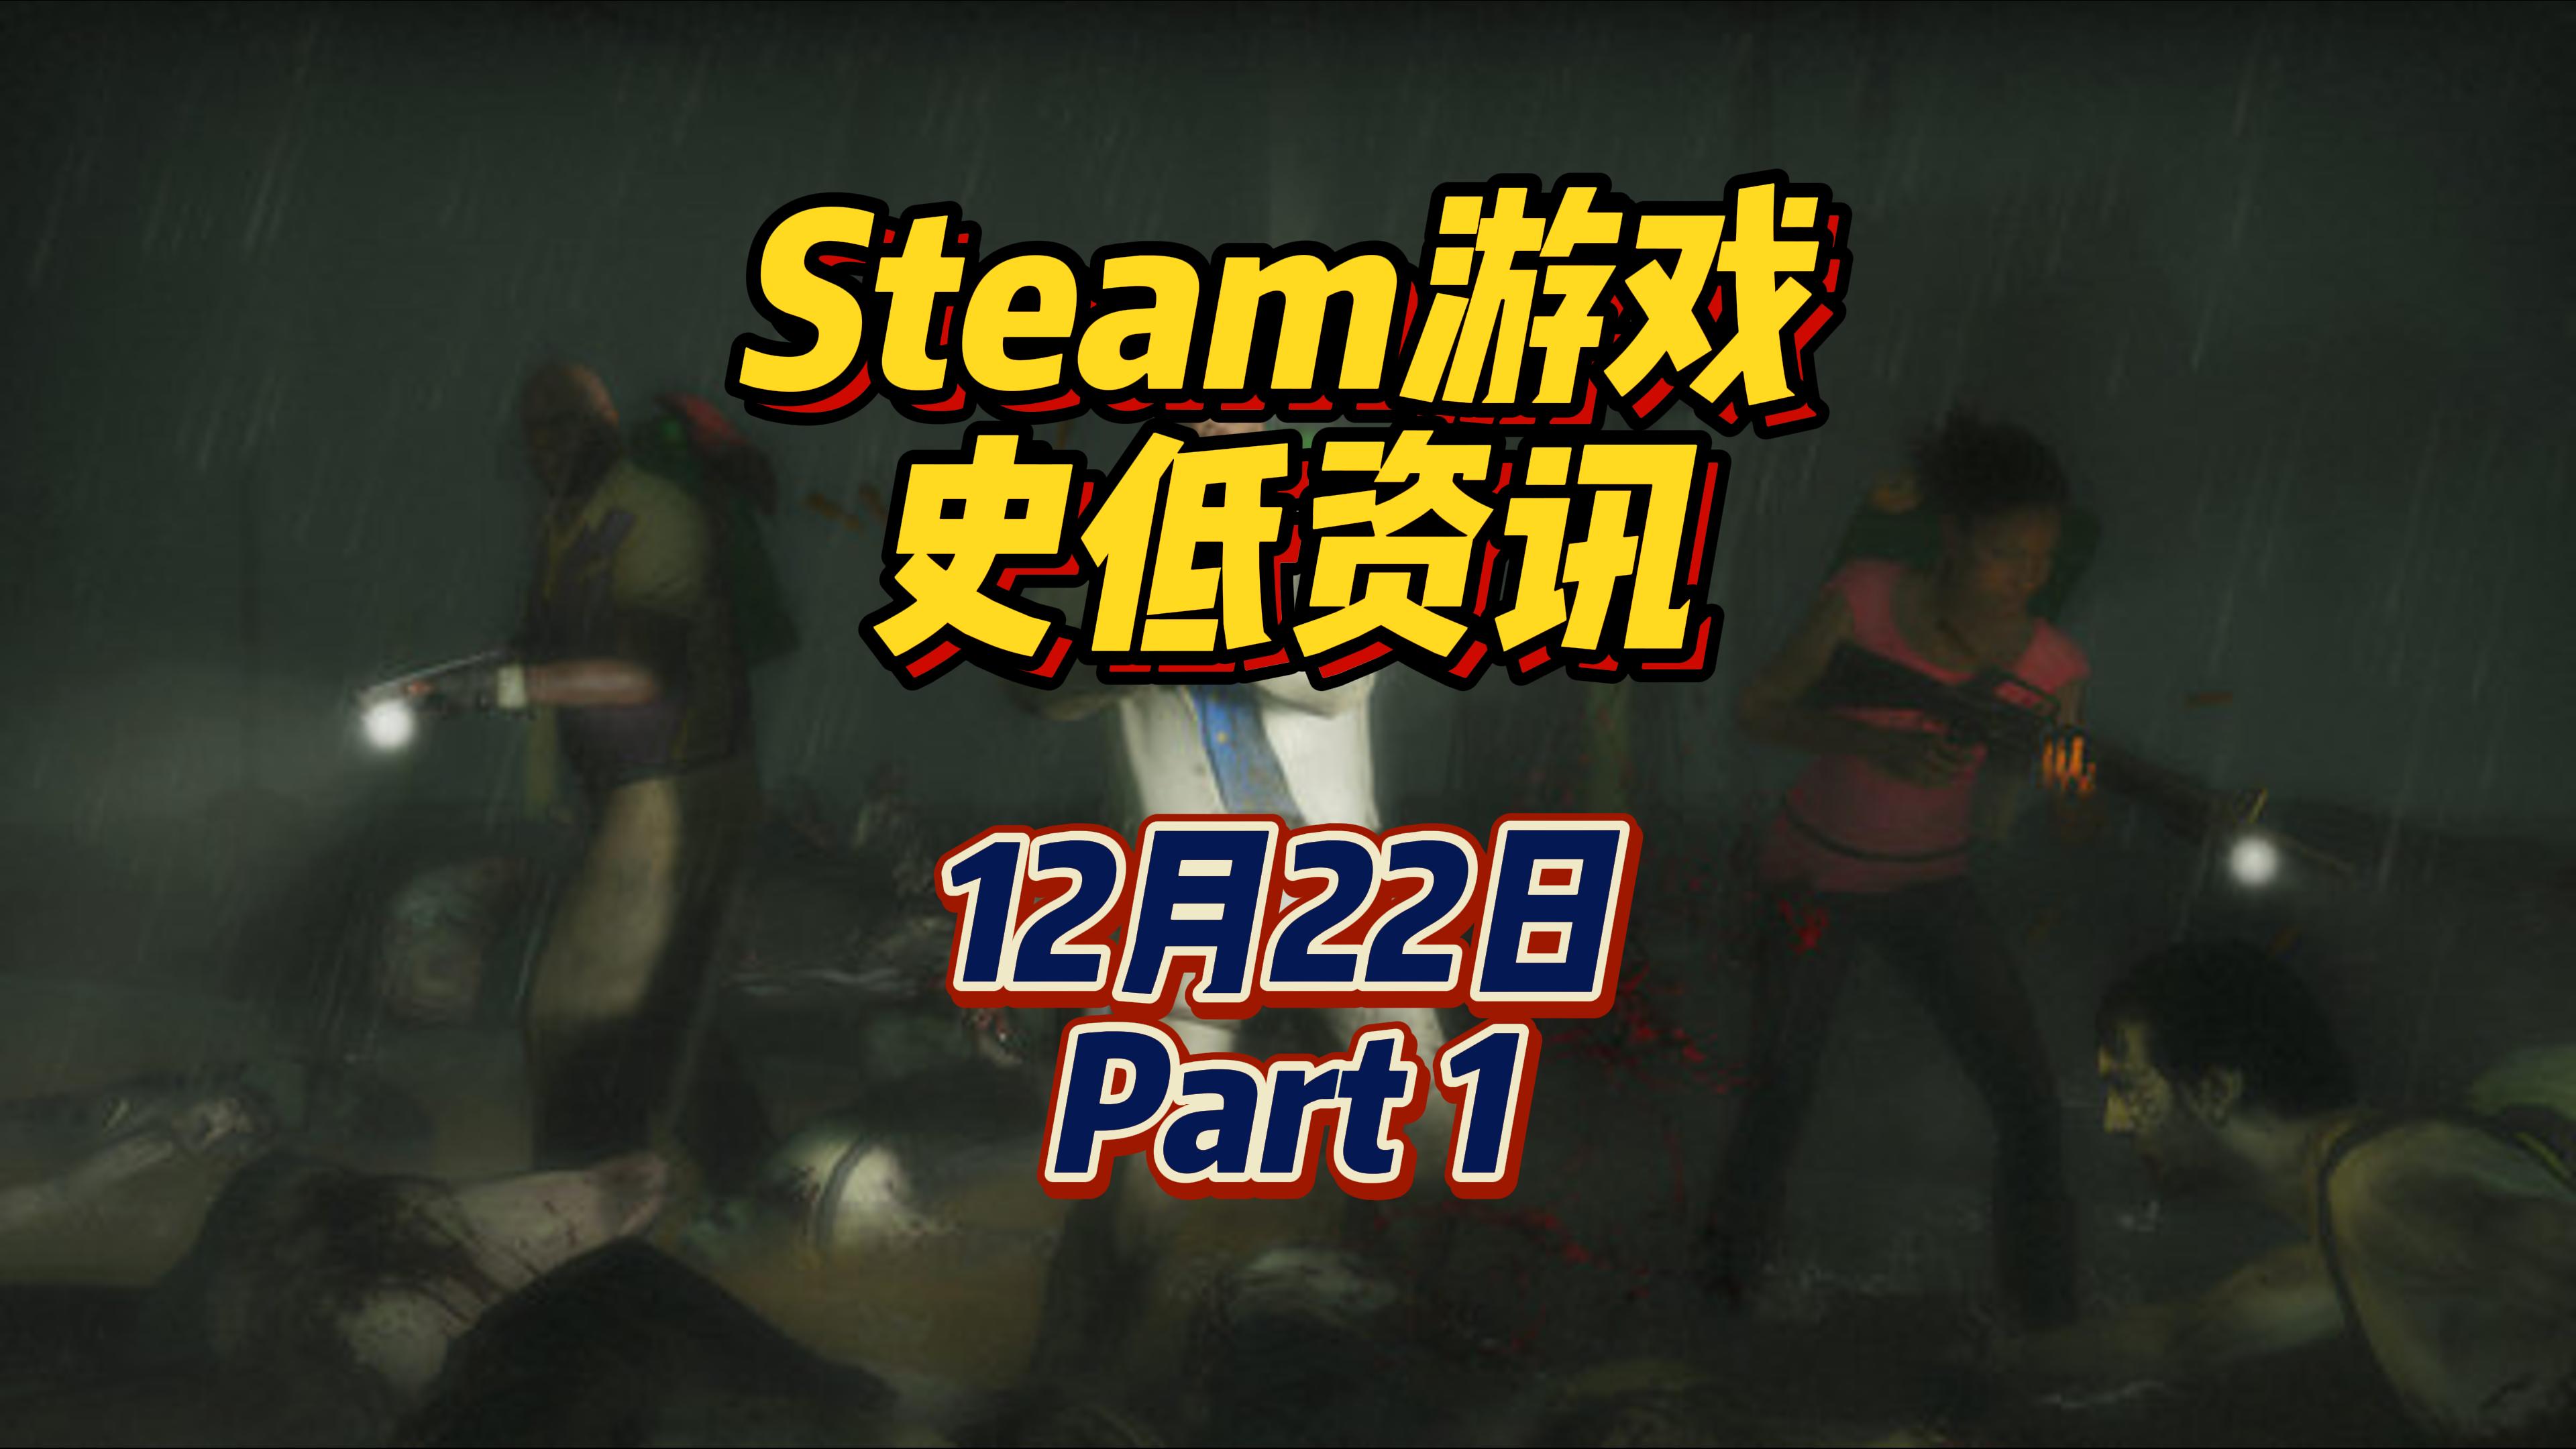 求生之路 2、孢子平史低，经典好游戏的史低狂欢，12 月 22 日 Steam 史低游戏 Part 1